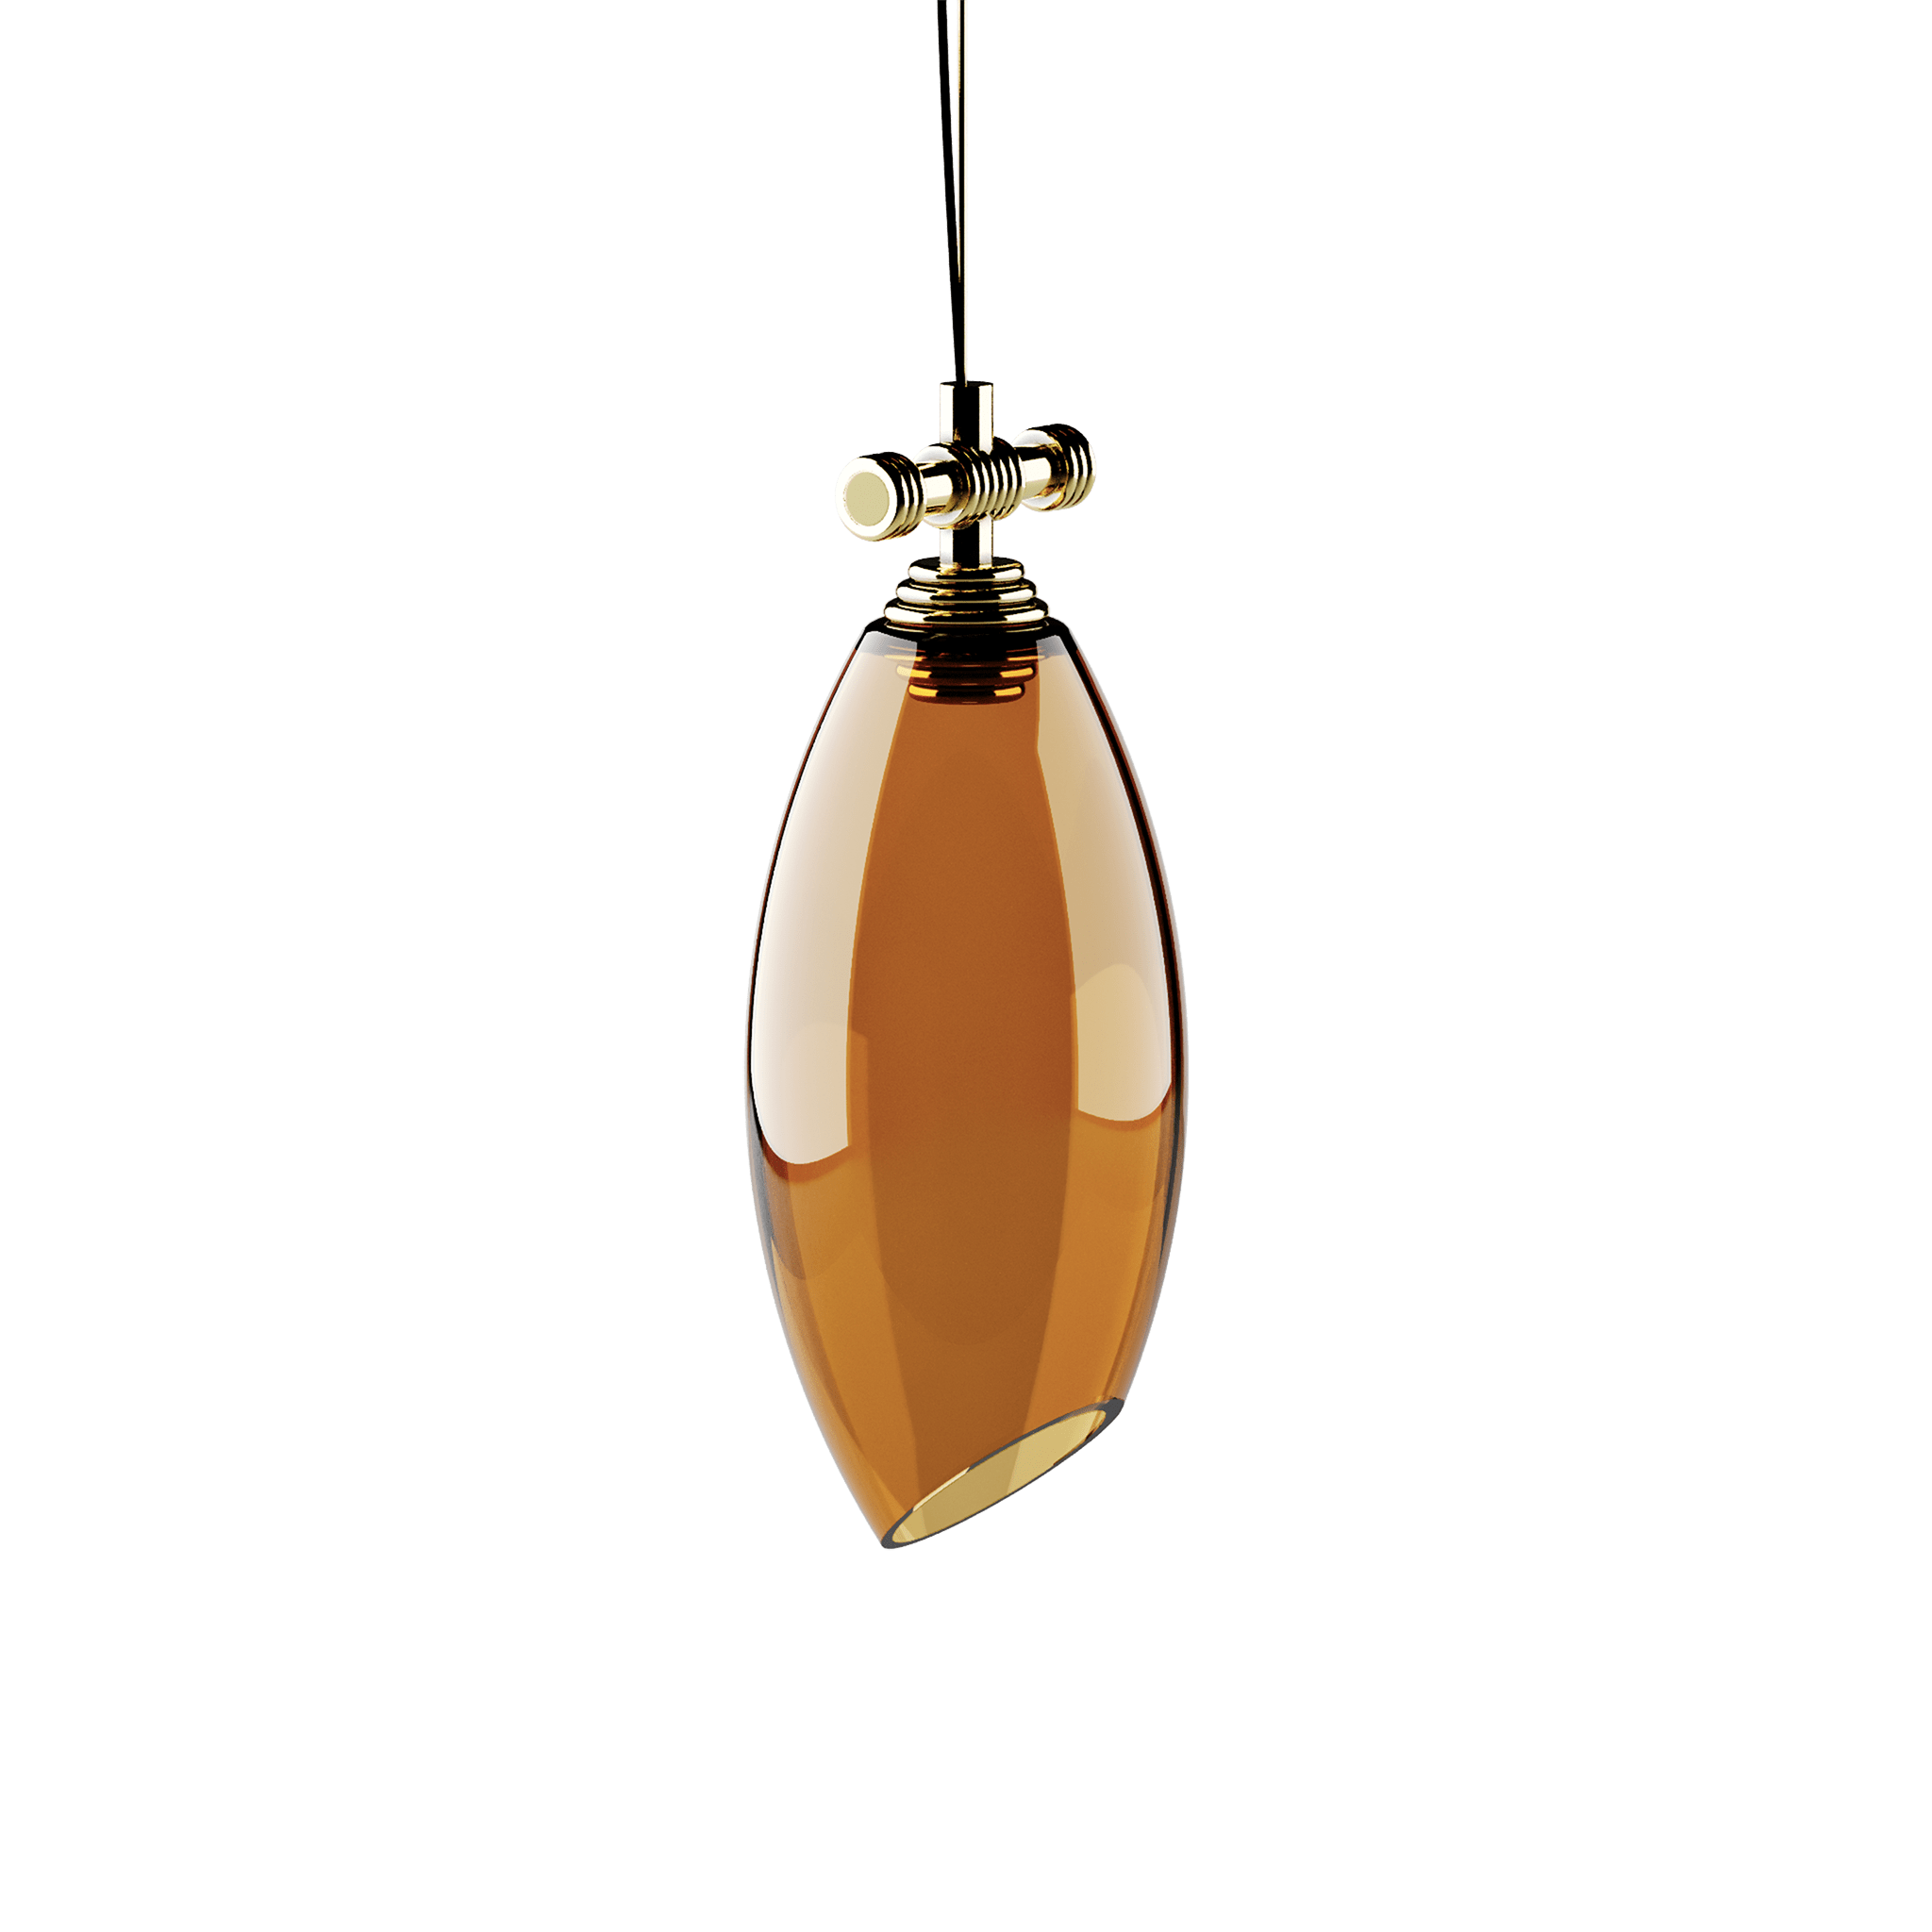 Cocoon Pendant Lamp by Hommés Studio